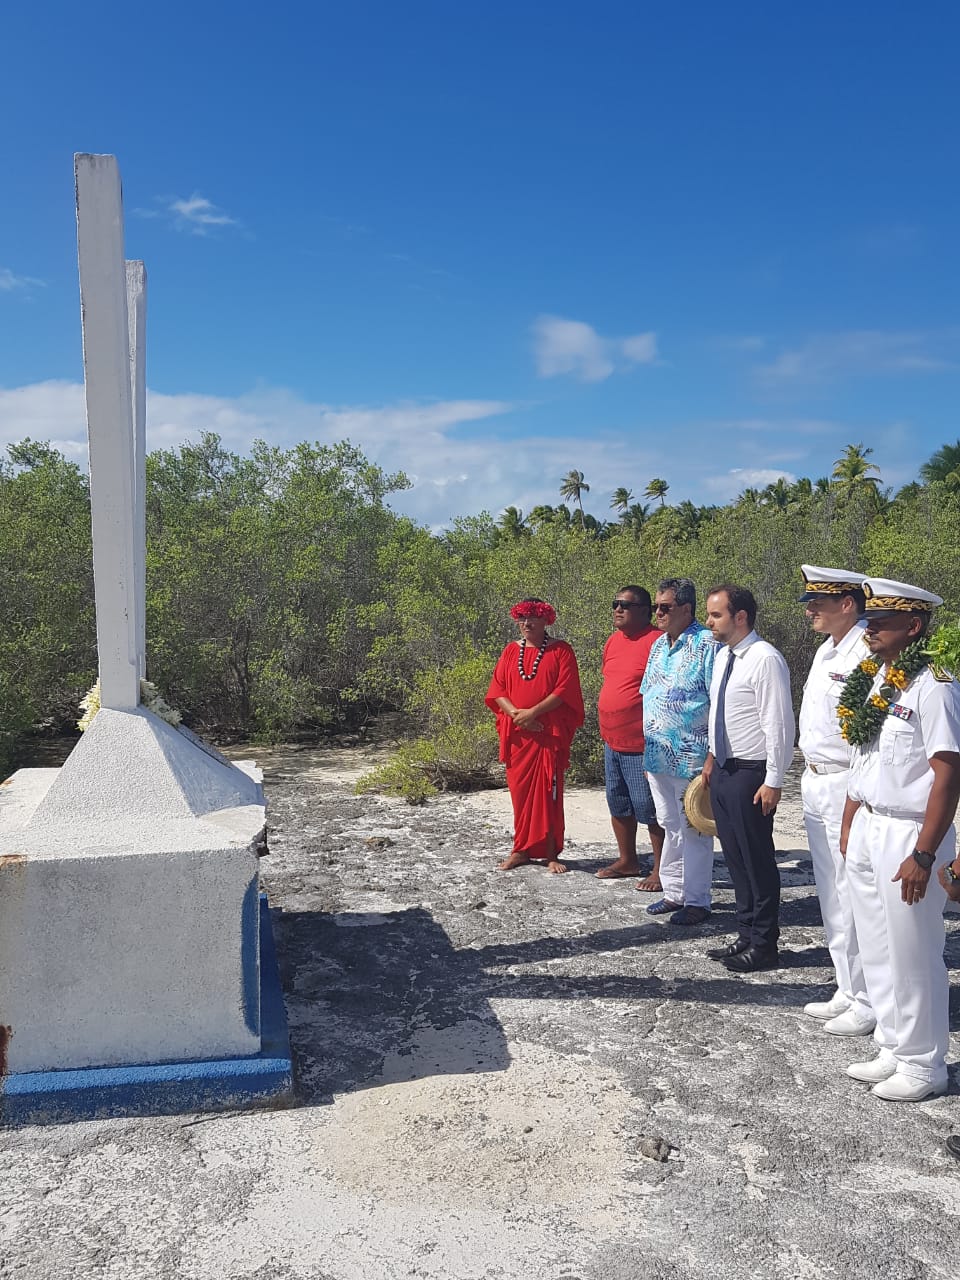 Le ministre s’être recueilli sur la stèle en hommage au Gendarme Viry, assassiné en 1852. Crédit Haut-commissariat de la Polynésie française.